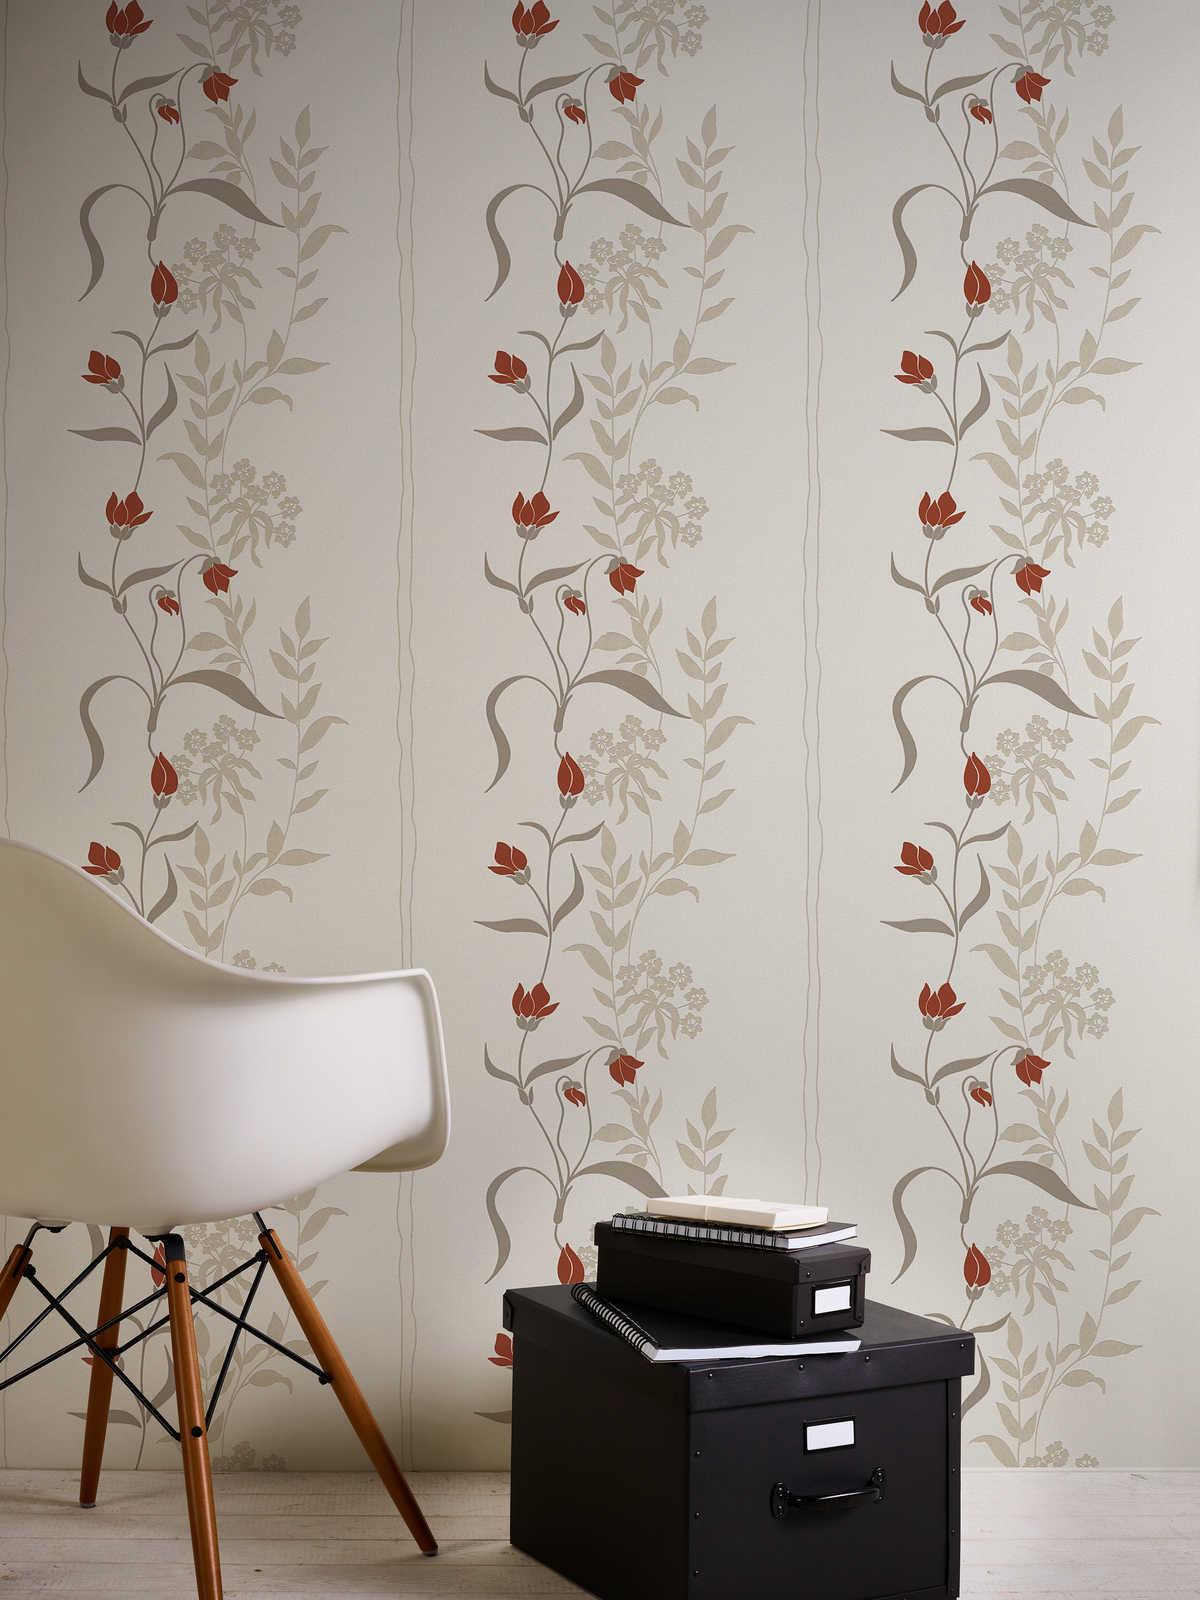             Wohnzimmer Tapete mit Blumen Ranken – Beige, Braun, Rot
        